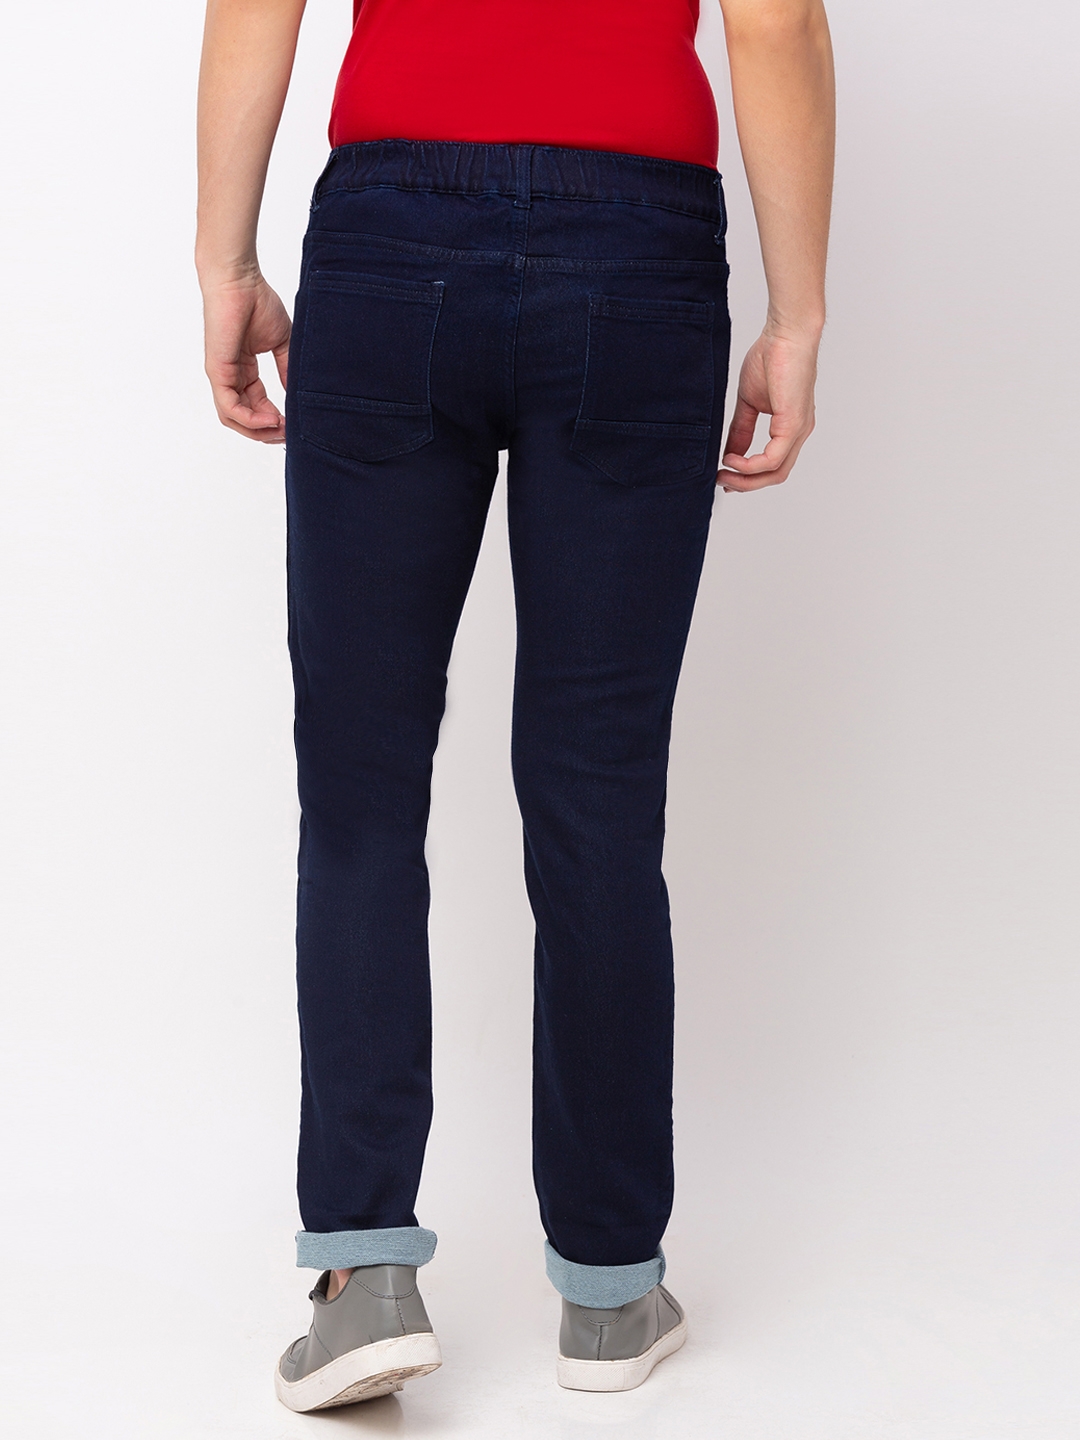 globus | Men's Blue Polycotton Striped Joggers Jeans 2